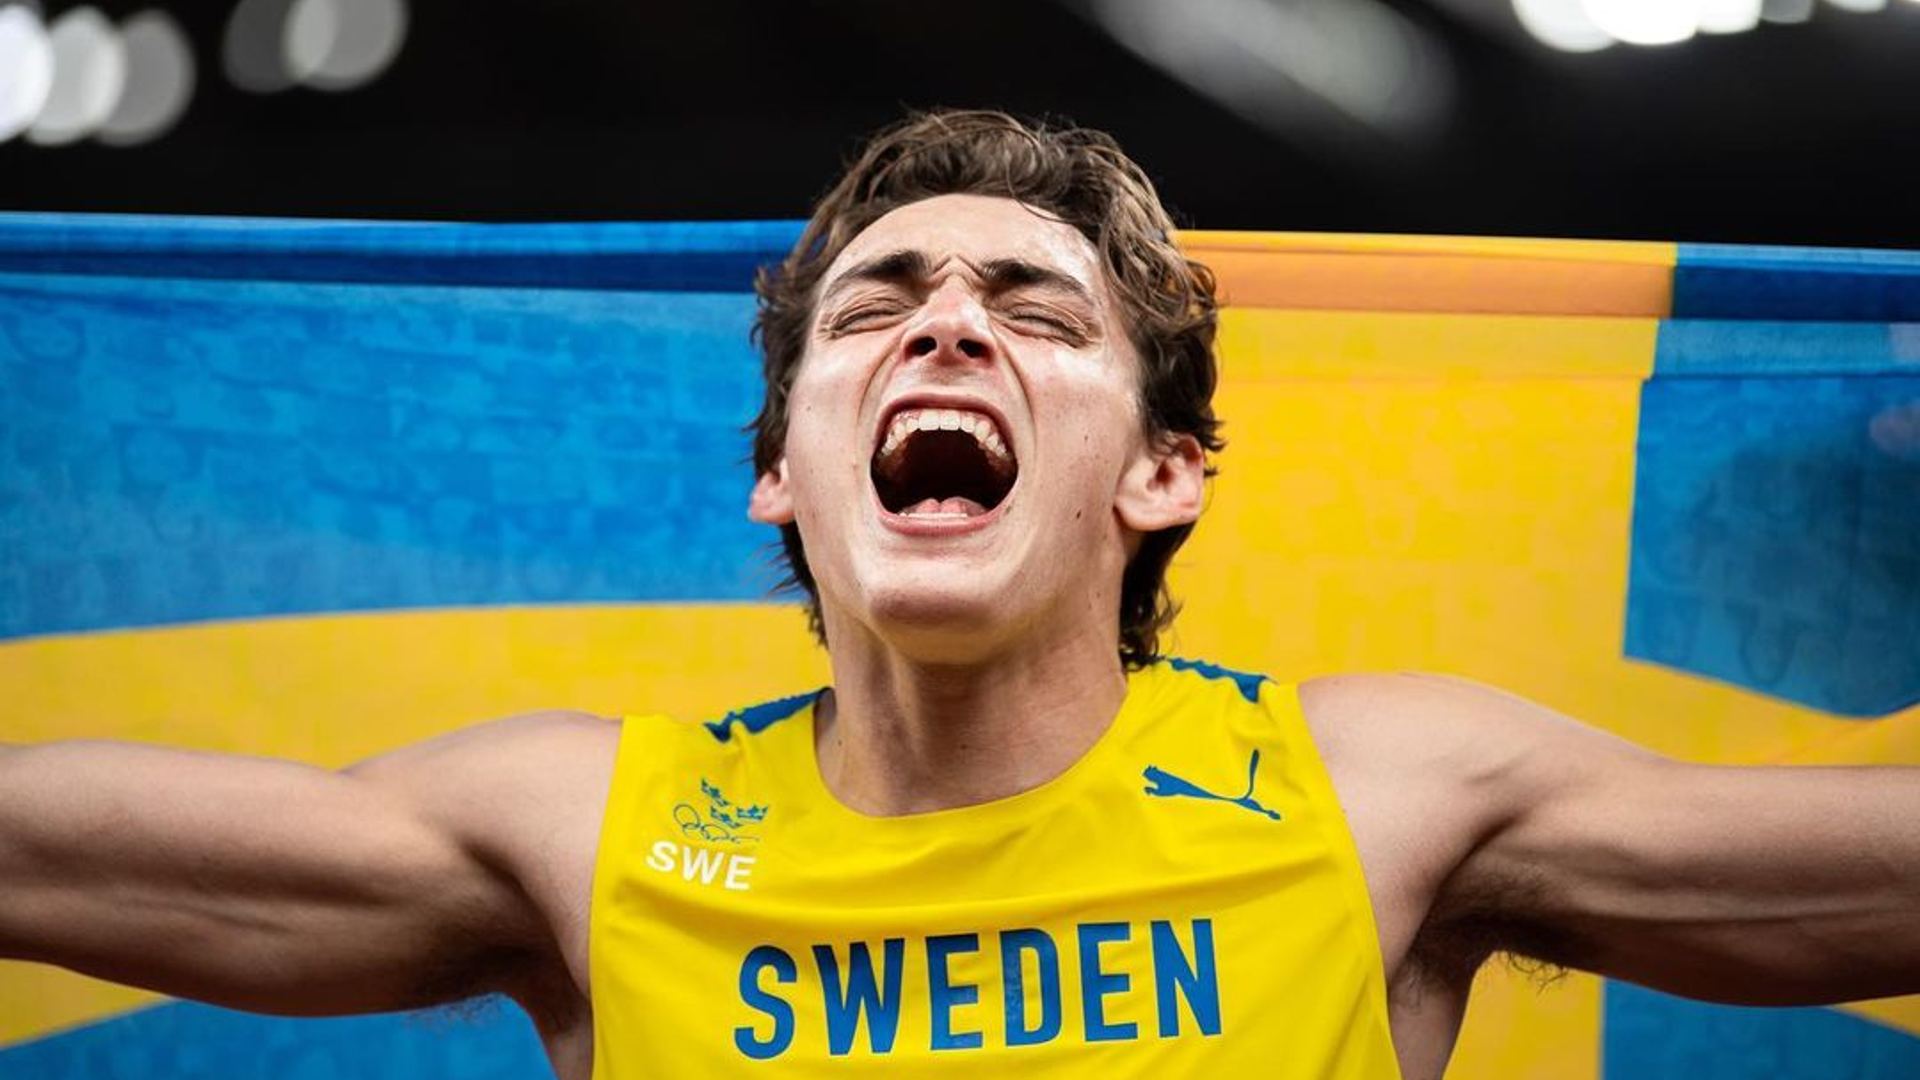 Mondo Duplantis holding the Swedish flag (Image: Instagram)